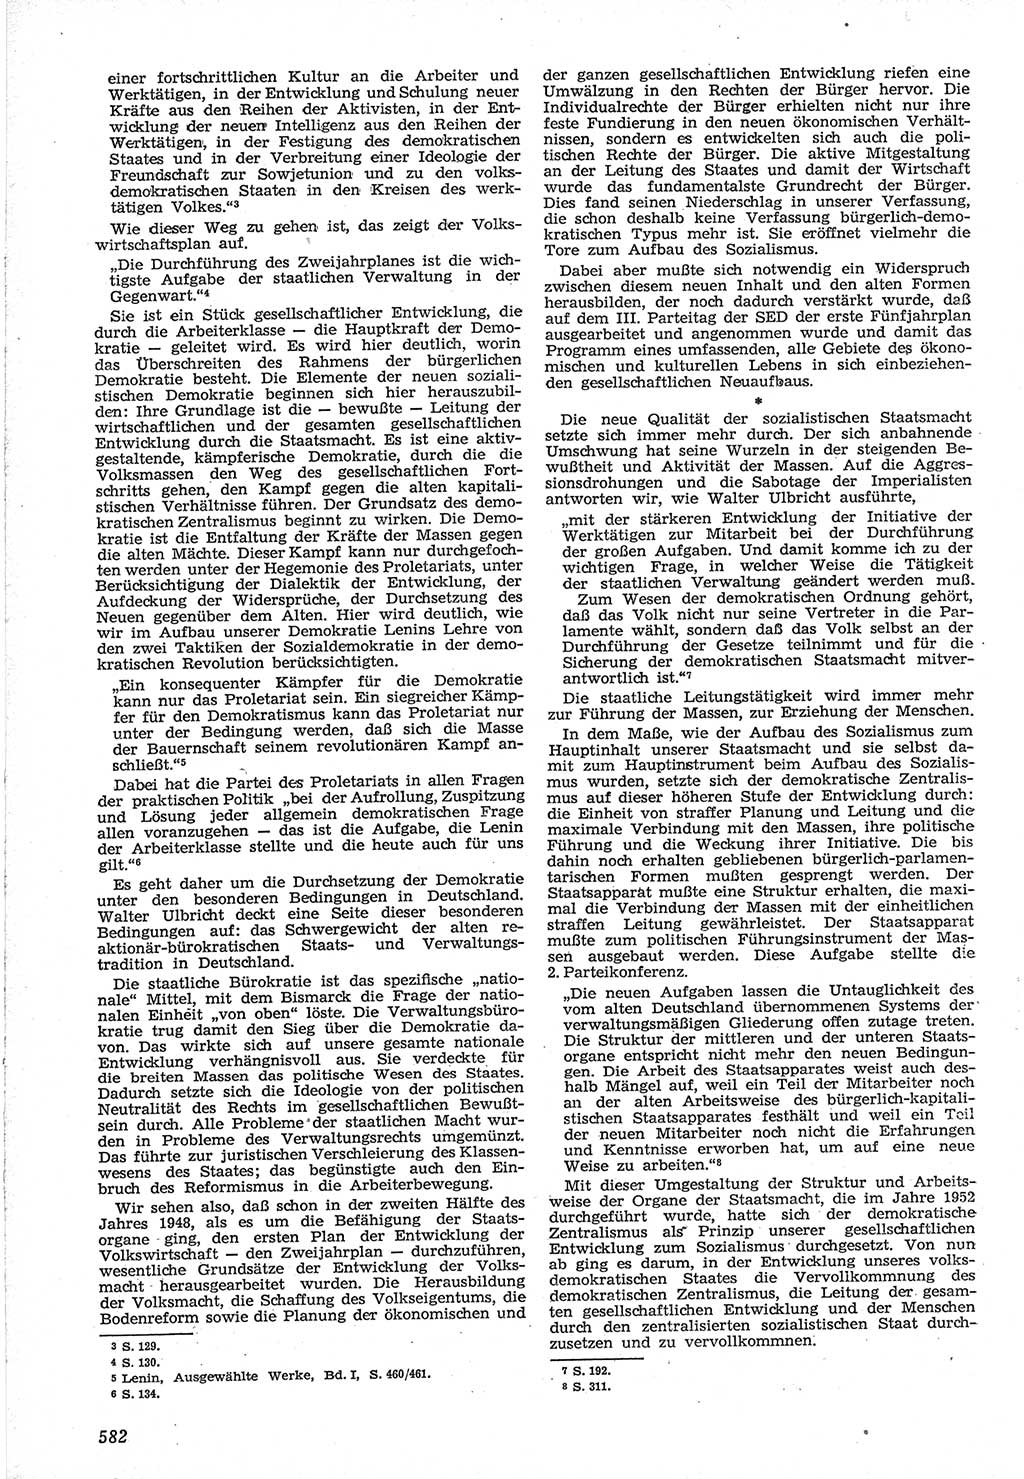 Neue Justiz (NJ), Zeitschrift für Recht und Rechtswissenschaft [Deutsche Demokratische Republik (DDR)], 12. Jahrgang 1958, Seite 582 (NJ DDR 1958, S. 582)